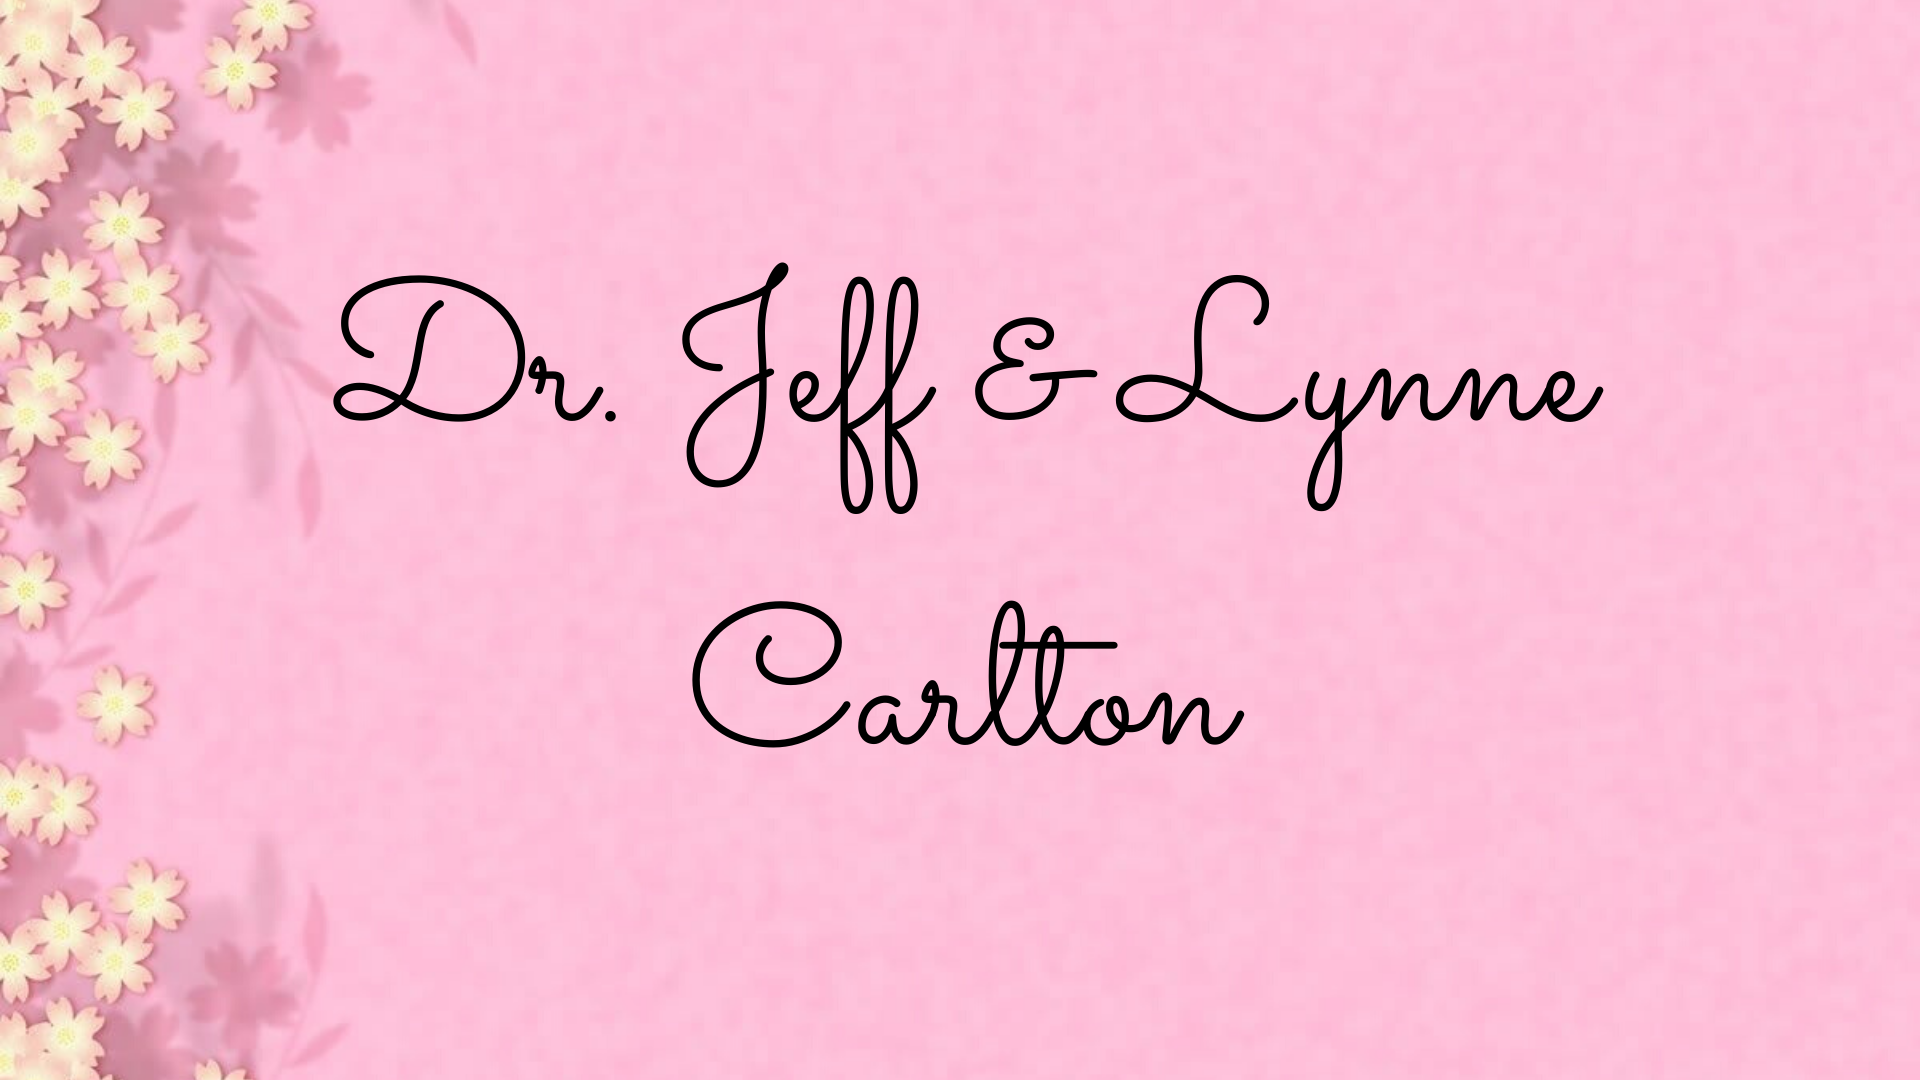 Dr. Jeff & Lynne Carlton